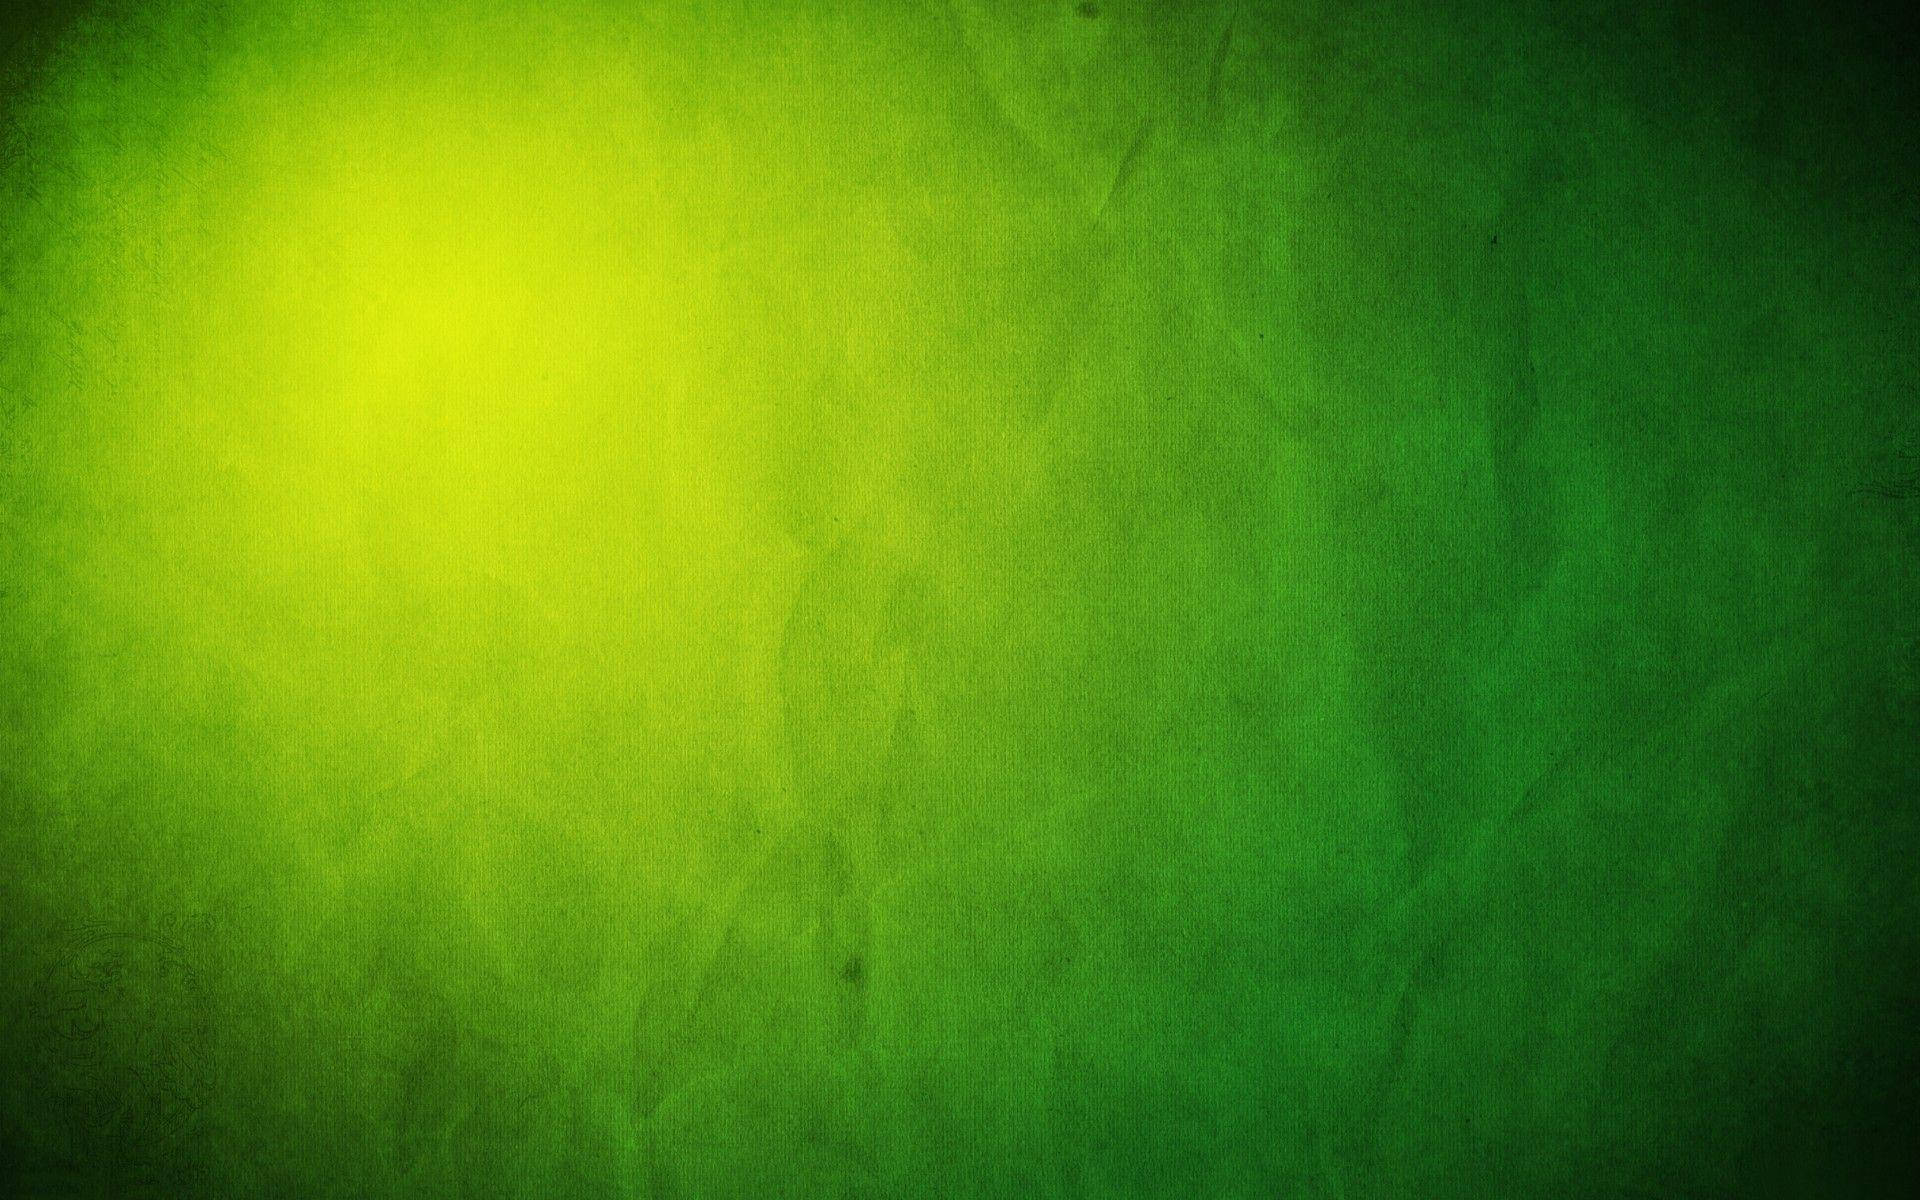 Light Green Plain Crumpled Texture Background